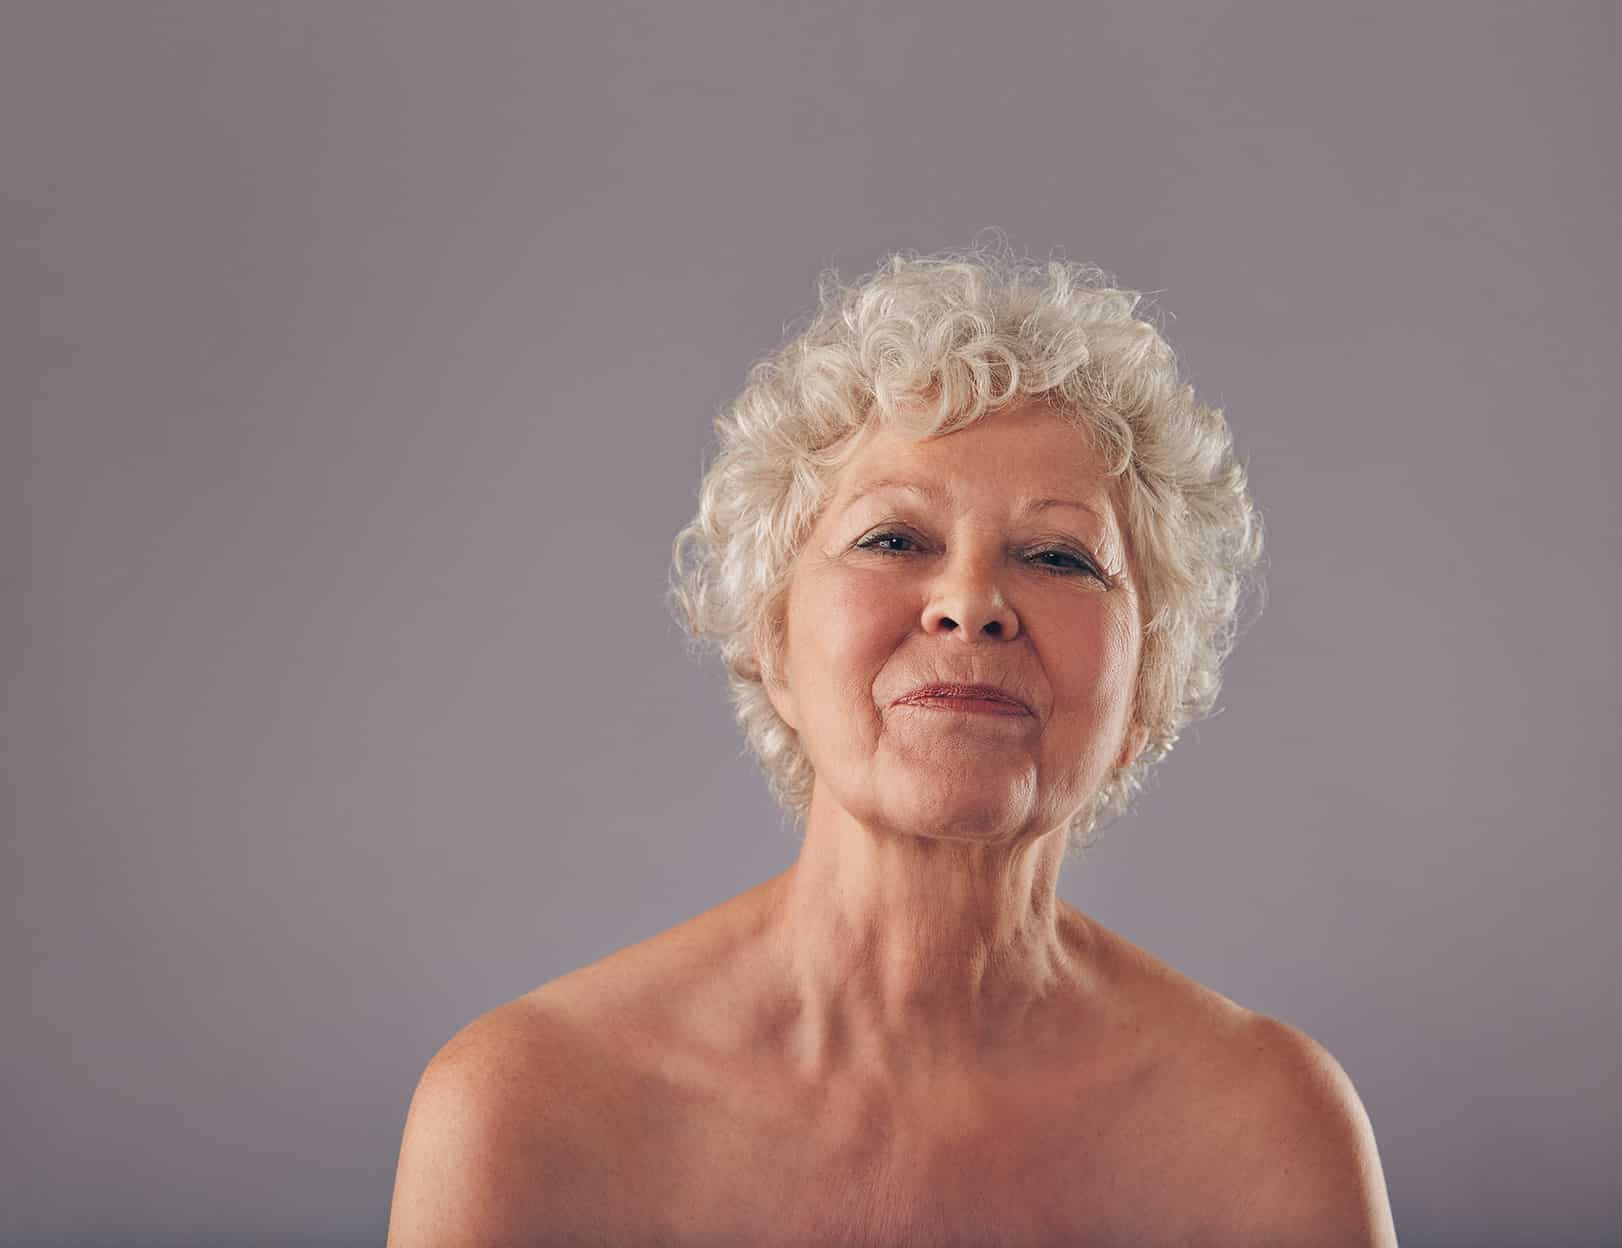 A portrait of a confident older woman